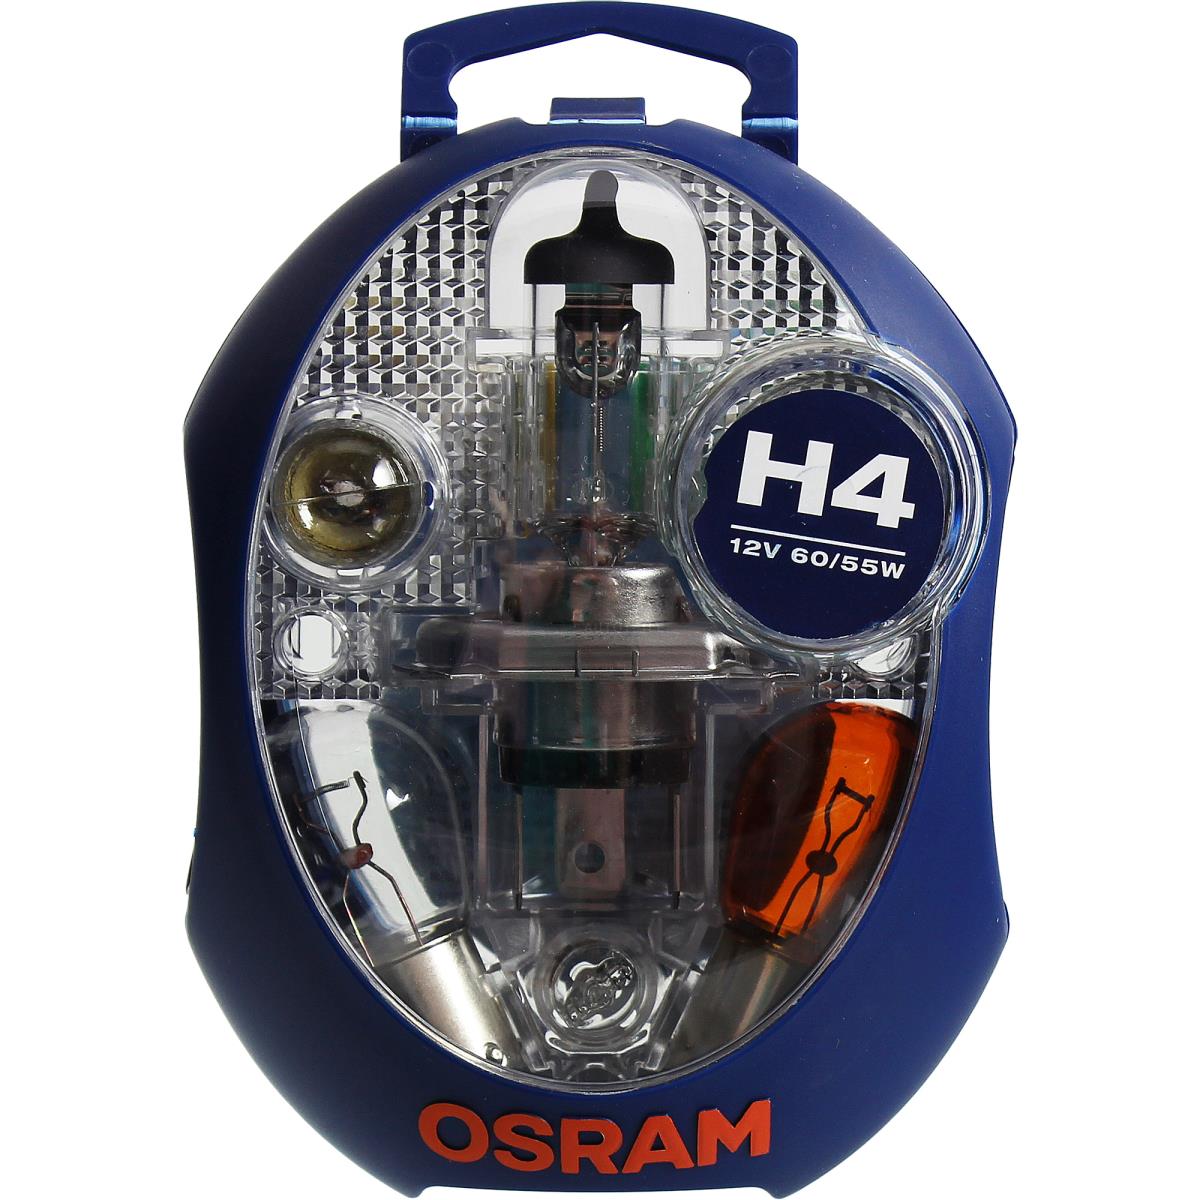 12V 60/55W Ersatzlampen-Box OSRAM H4+P21W+PY21W+P21/5W+R5W+W5W Birne Lampe